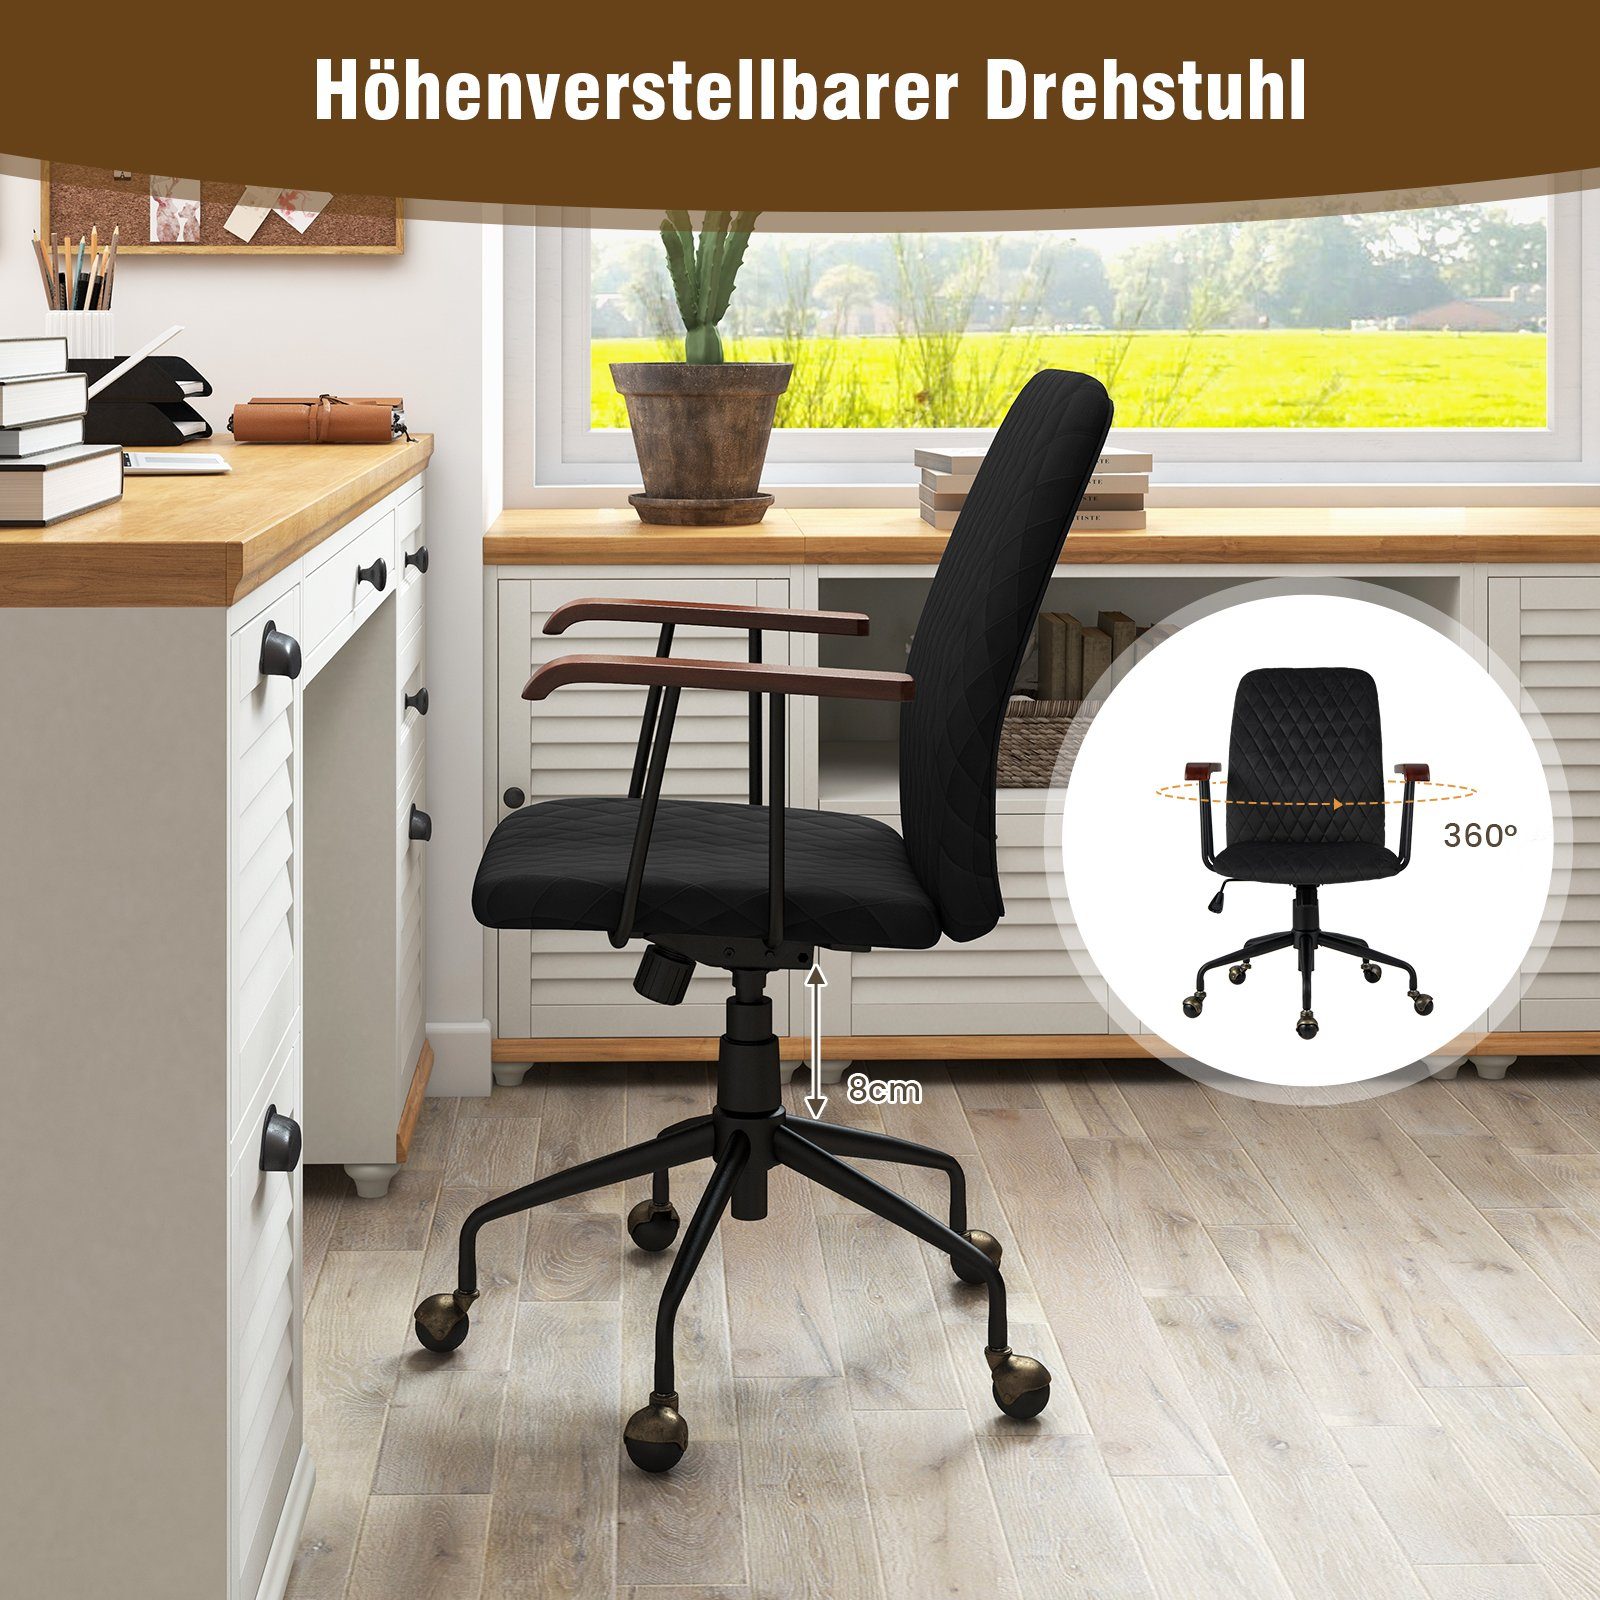 COSTWAY Drehstuhl, Bürostuhl bis 150 bis kg, 89,5 höheverstellbar schwarz 97,5cm